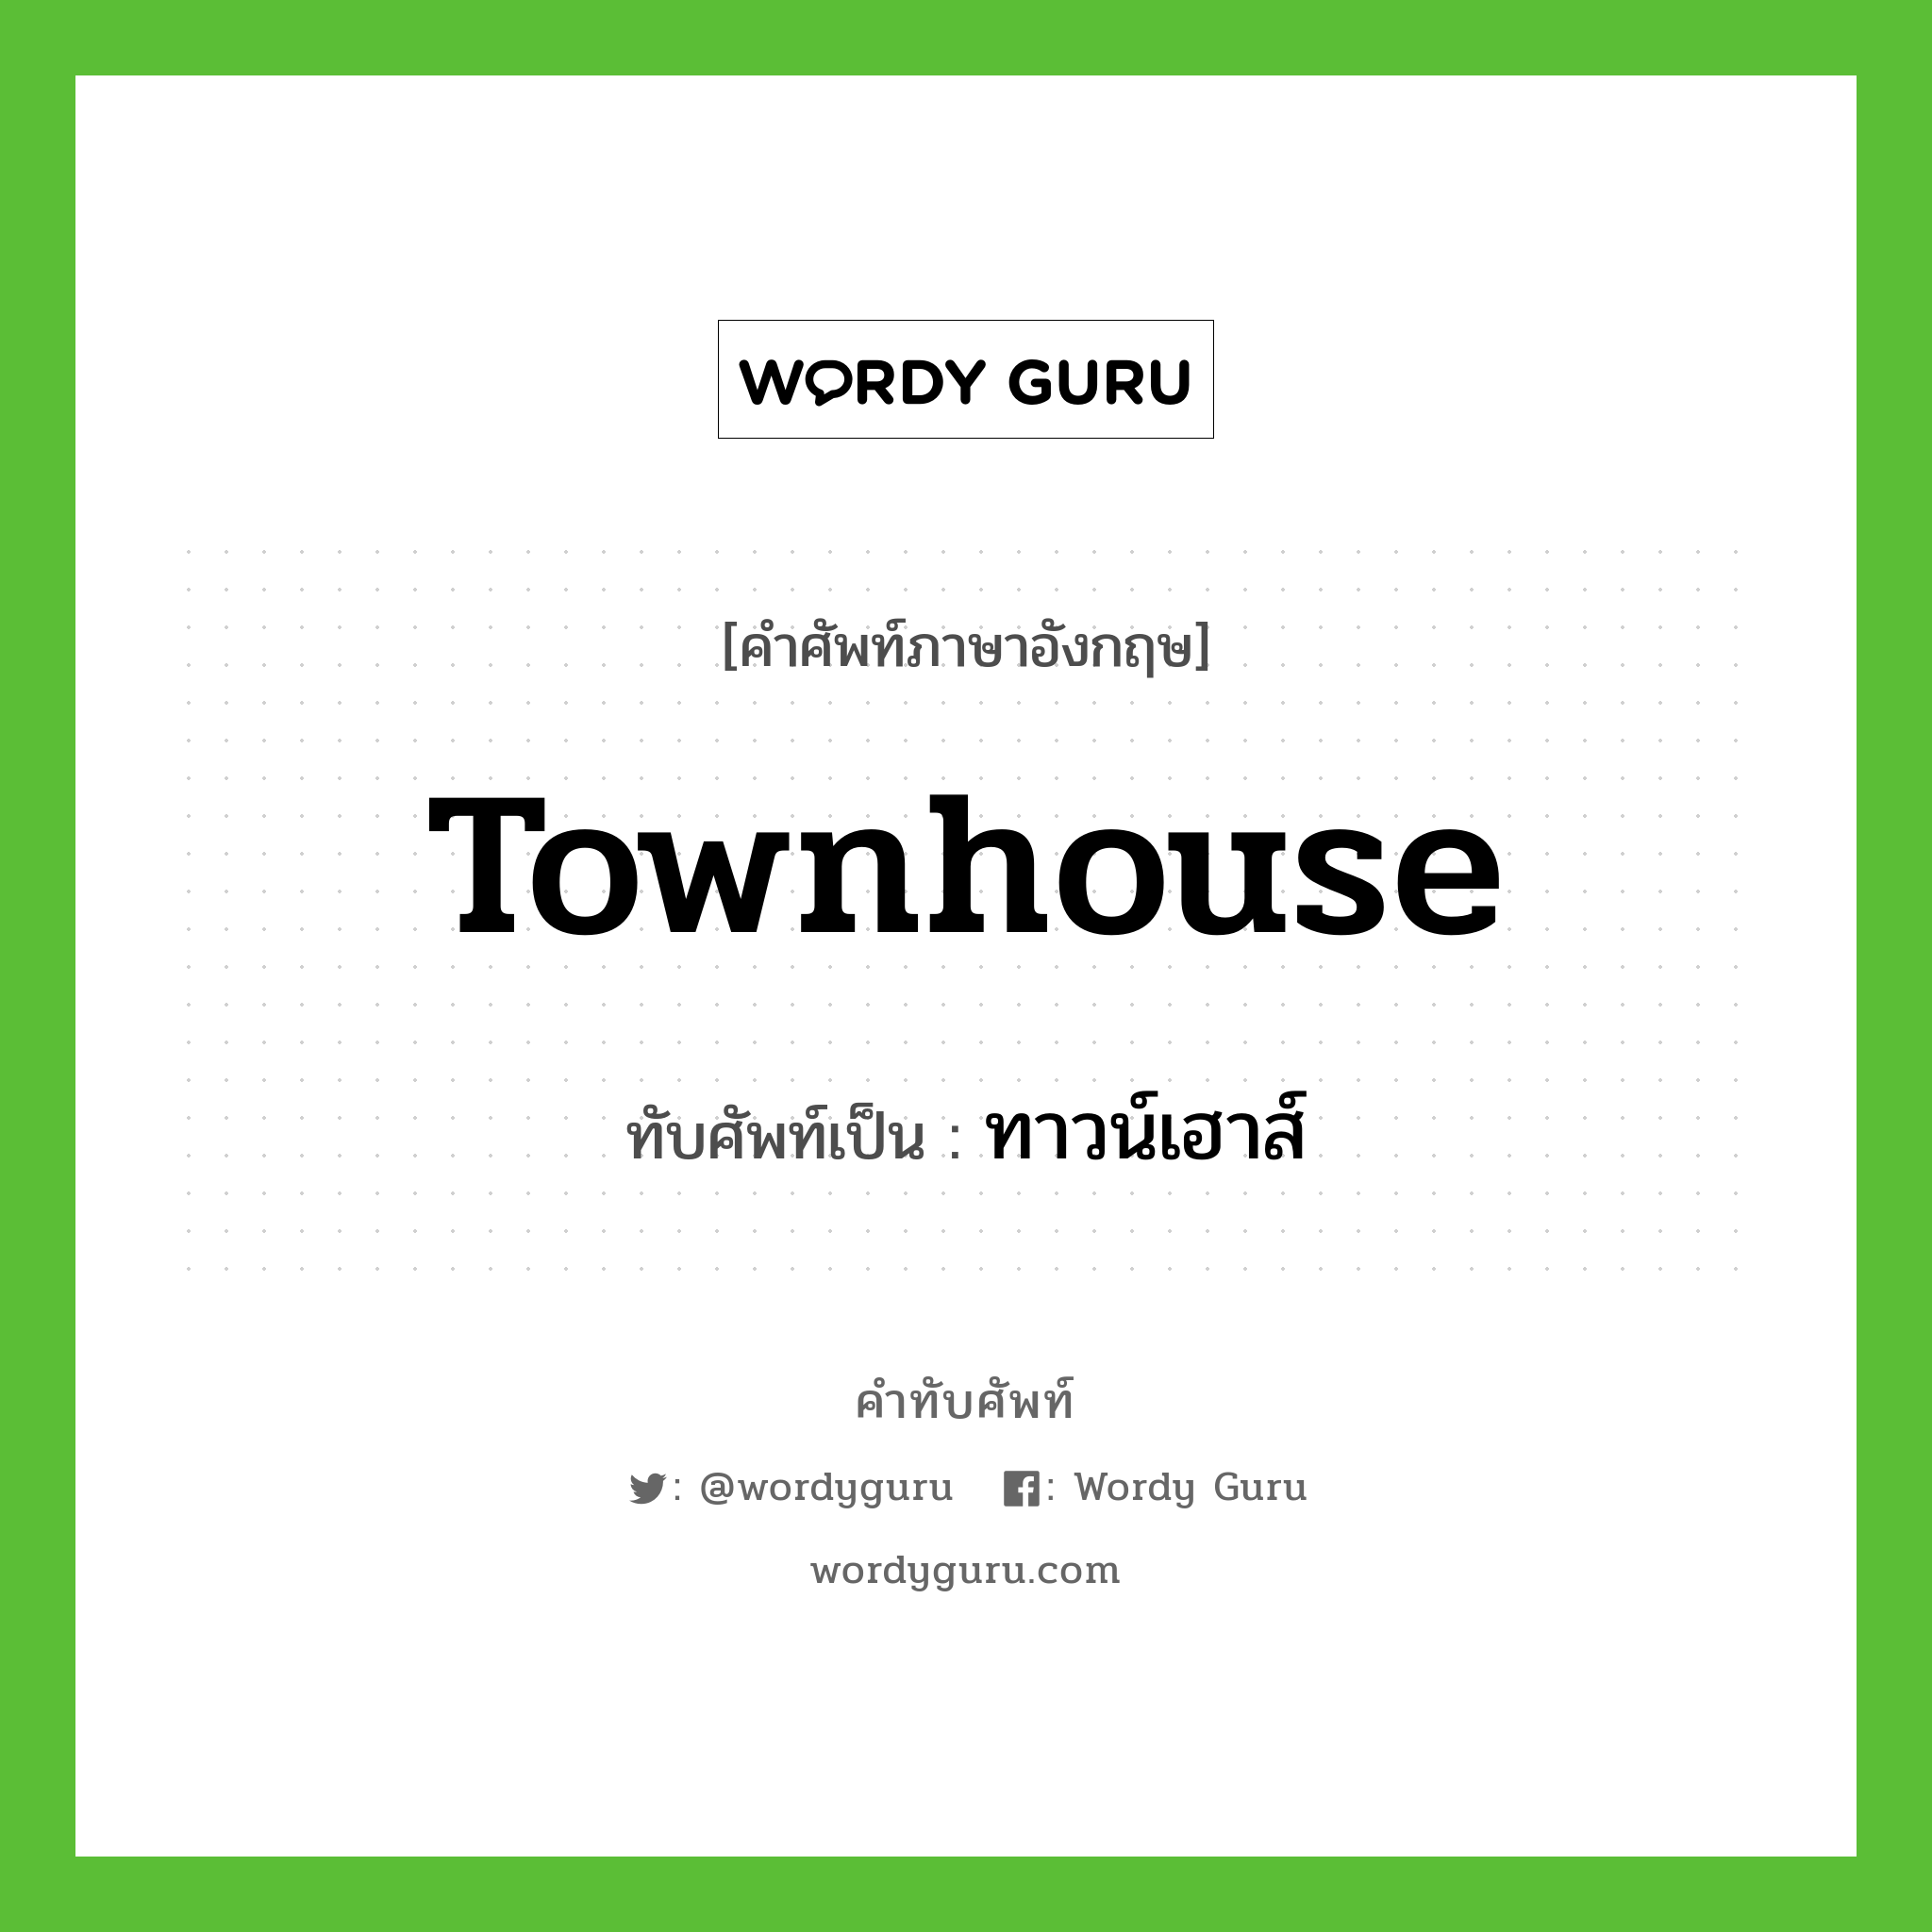 townhouse เขียนเป็นคำไทยว่าอะไร?, คำศัพท์ภาษาอังกฤษ townhouse ทับศัพท์เป็น ทาวน์เฮาส์